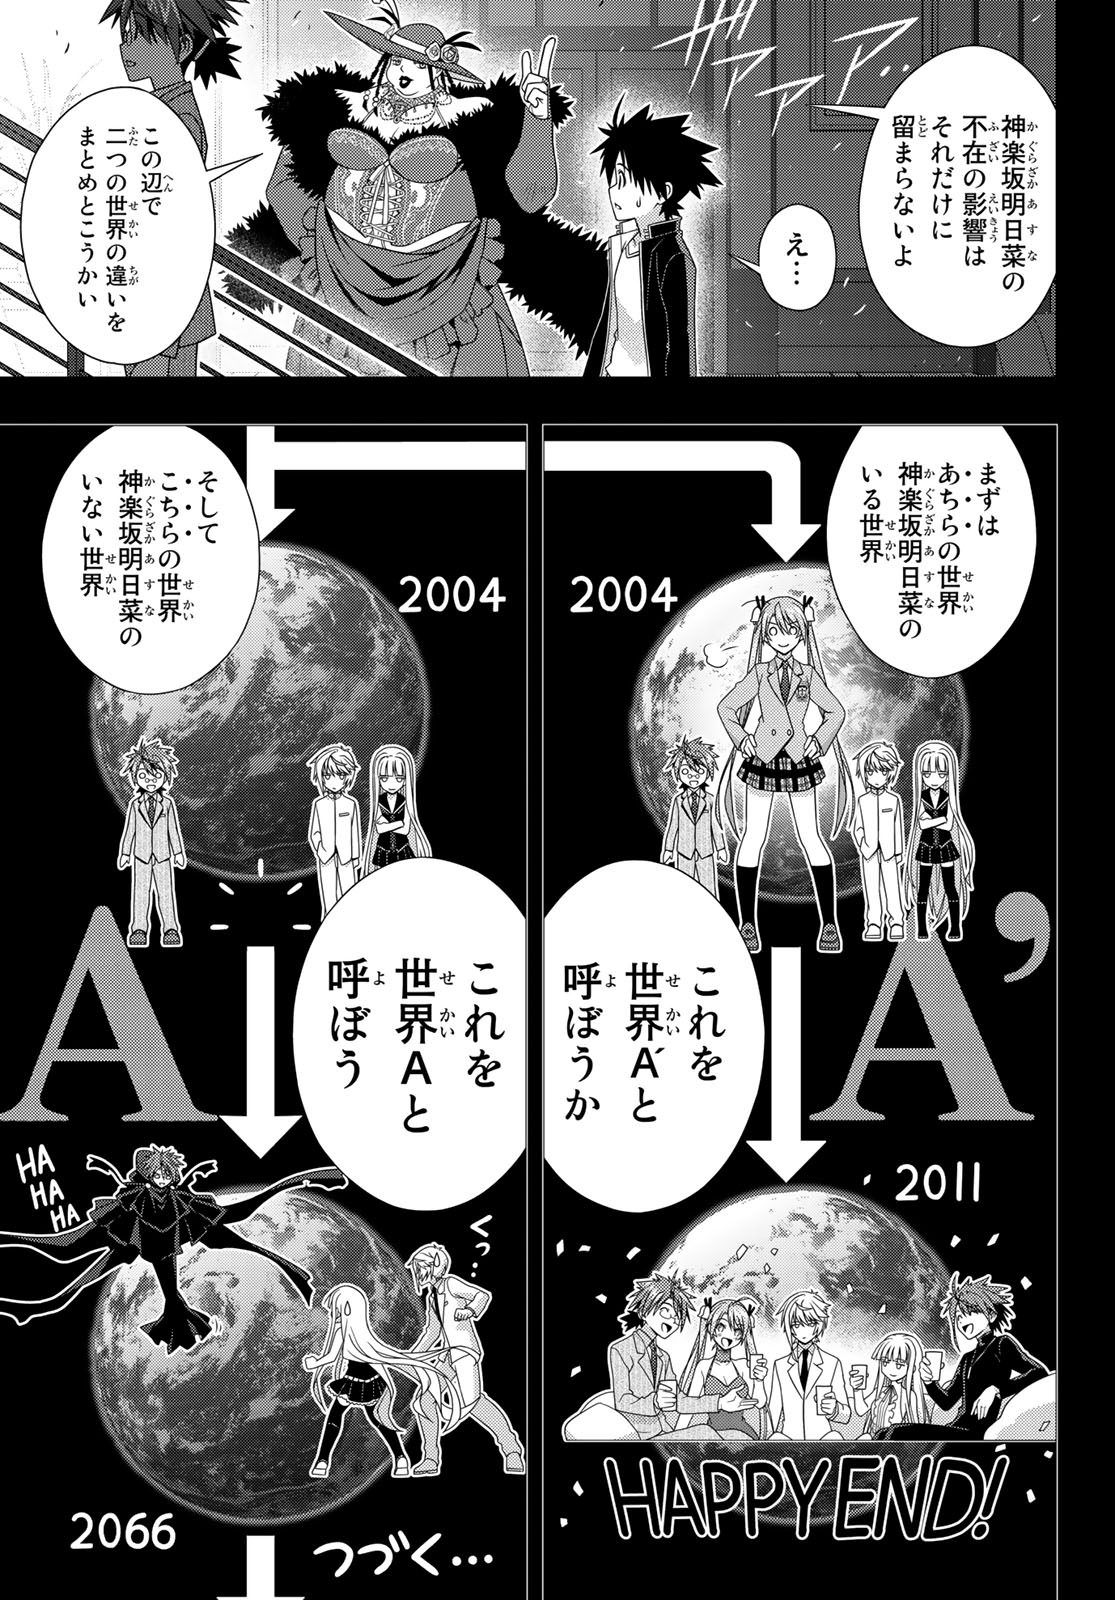 Uq Holder Chapter 148 Spoiler Images Astronerdboy S Anime Manga Blog Astronerdboy S Anime Manga Blog